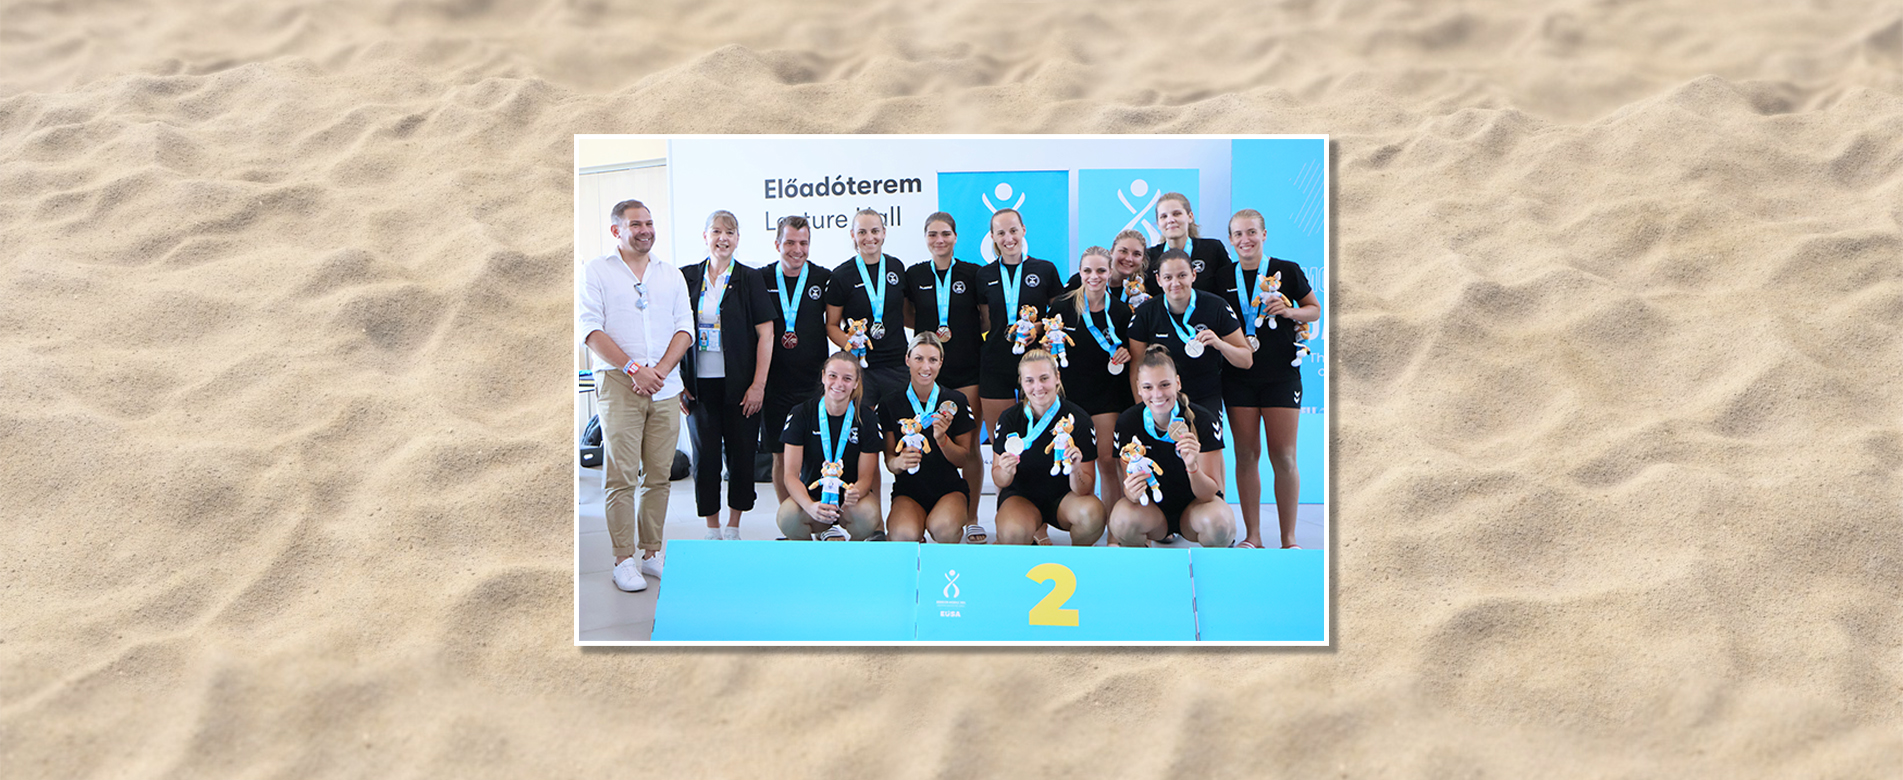 Ezüstérmes lett strandkézilabda csapatunk az Európai Egyetemi Játékokon